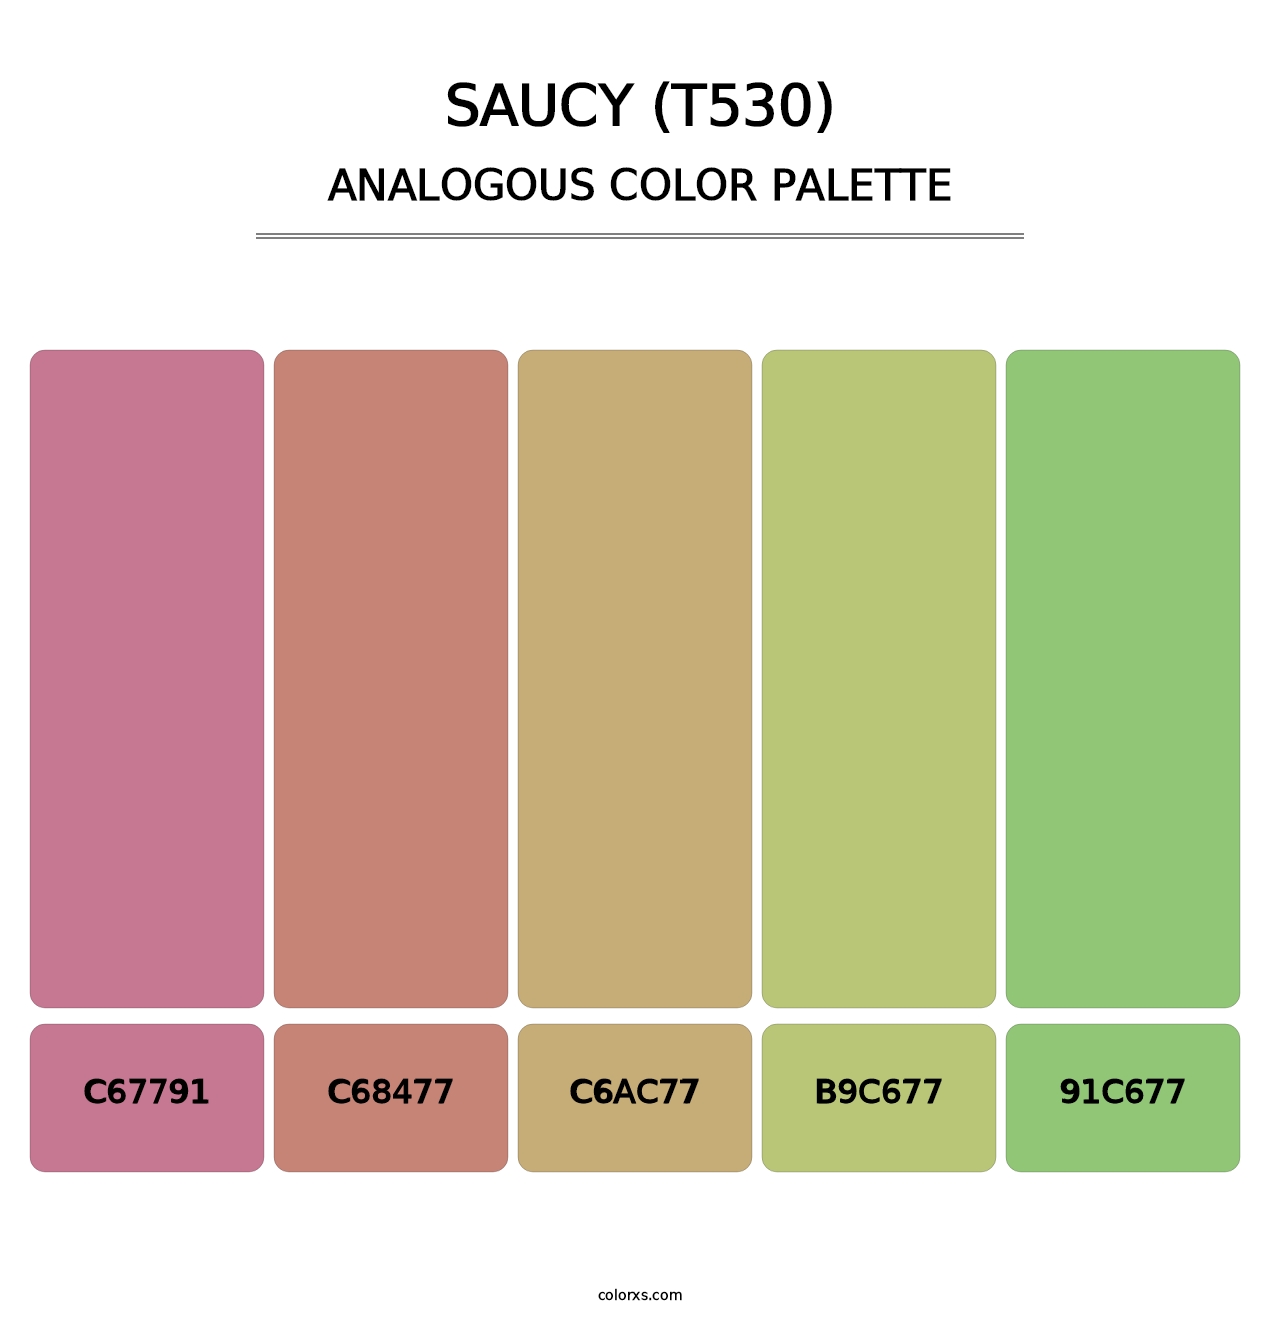 Saucy (T530) - Analogous Color Palette